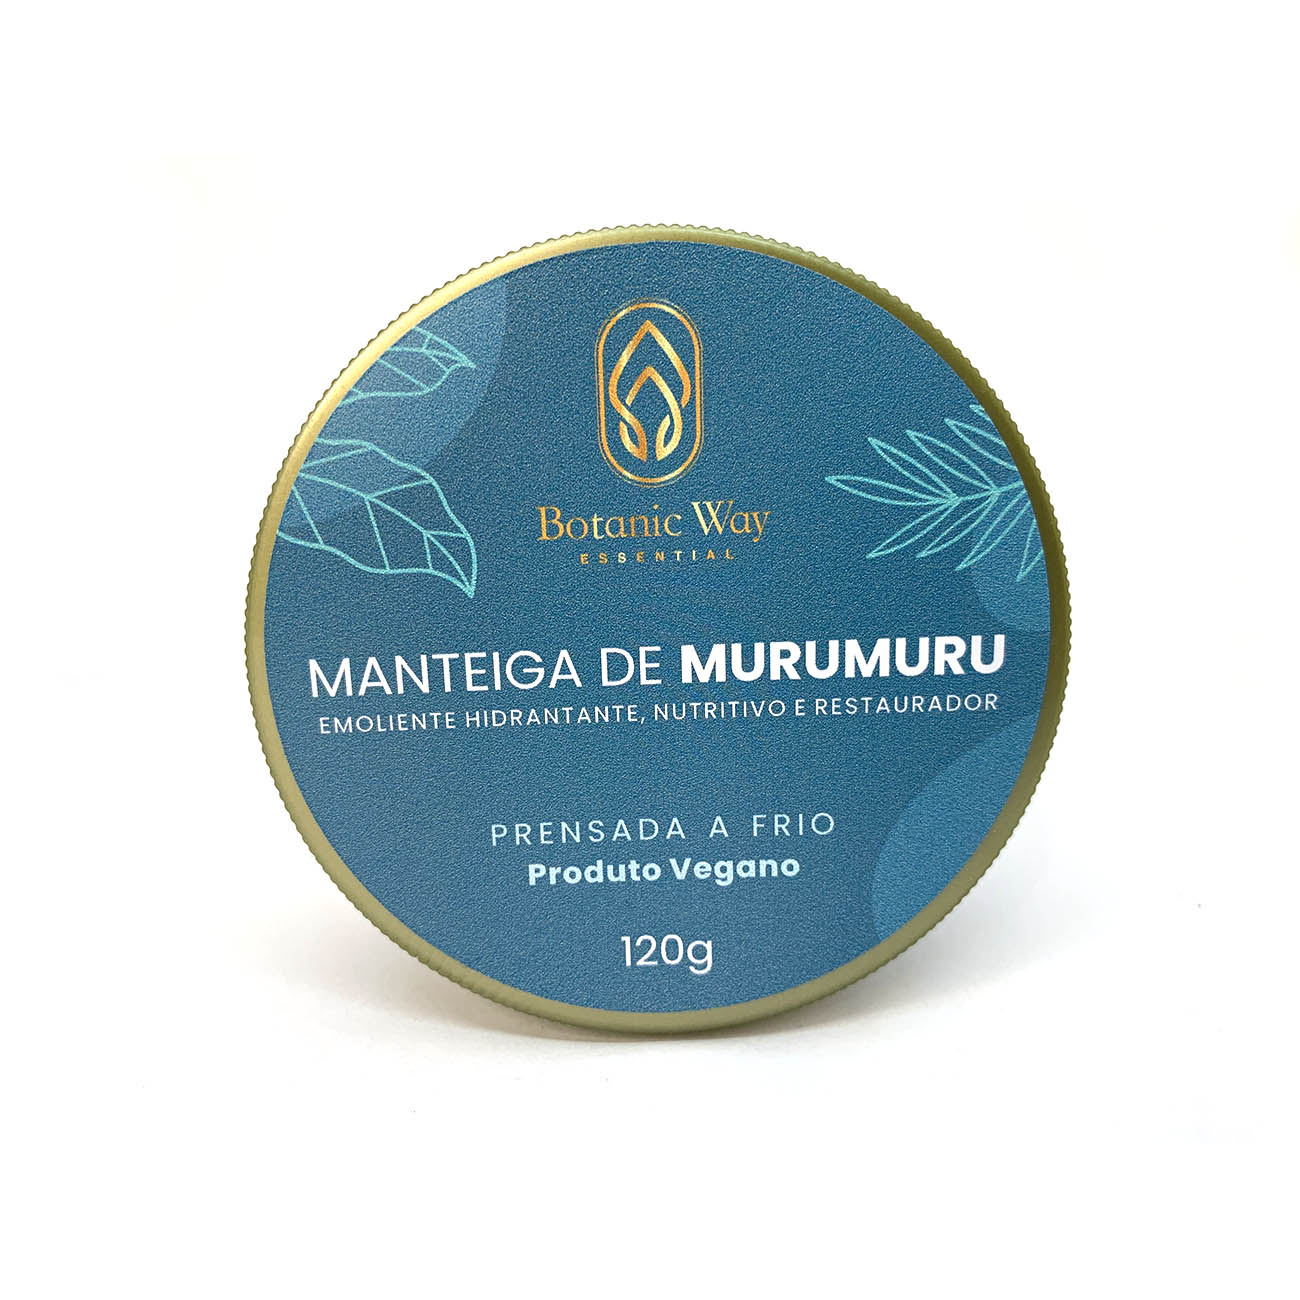 Manteiga de murumuru conquista espaço em rótulos de cosméticos e